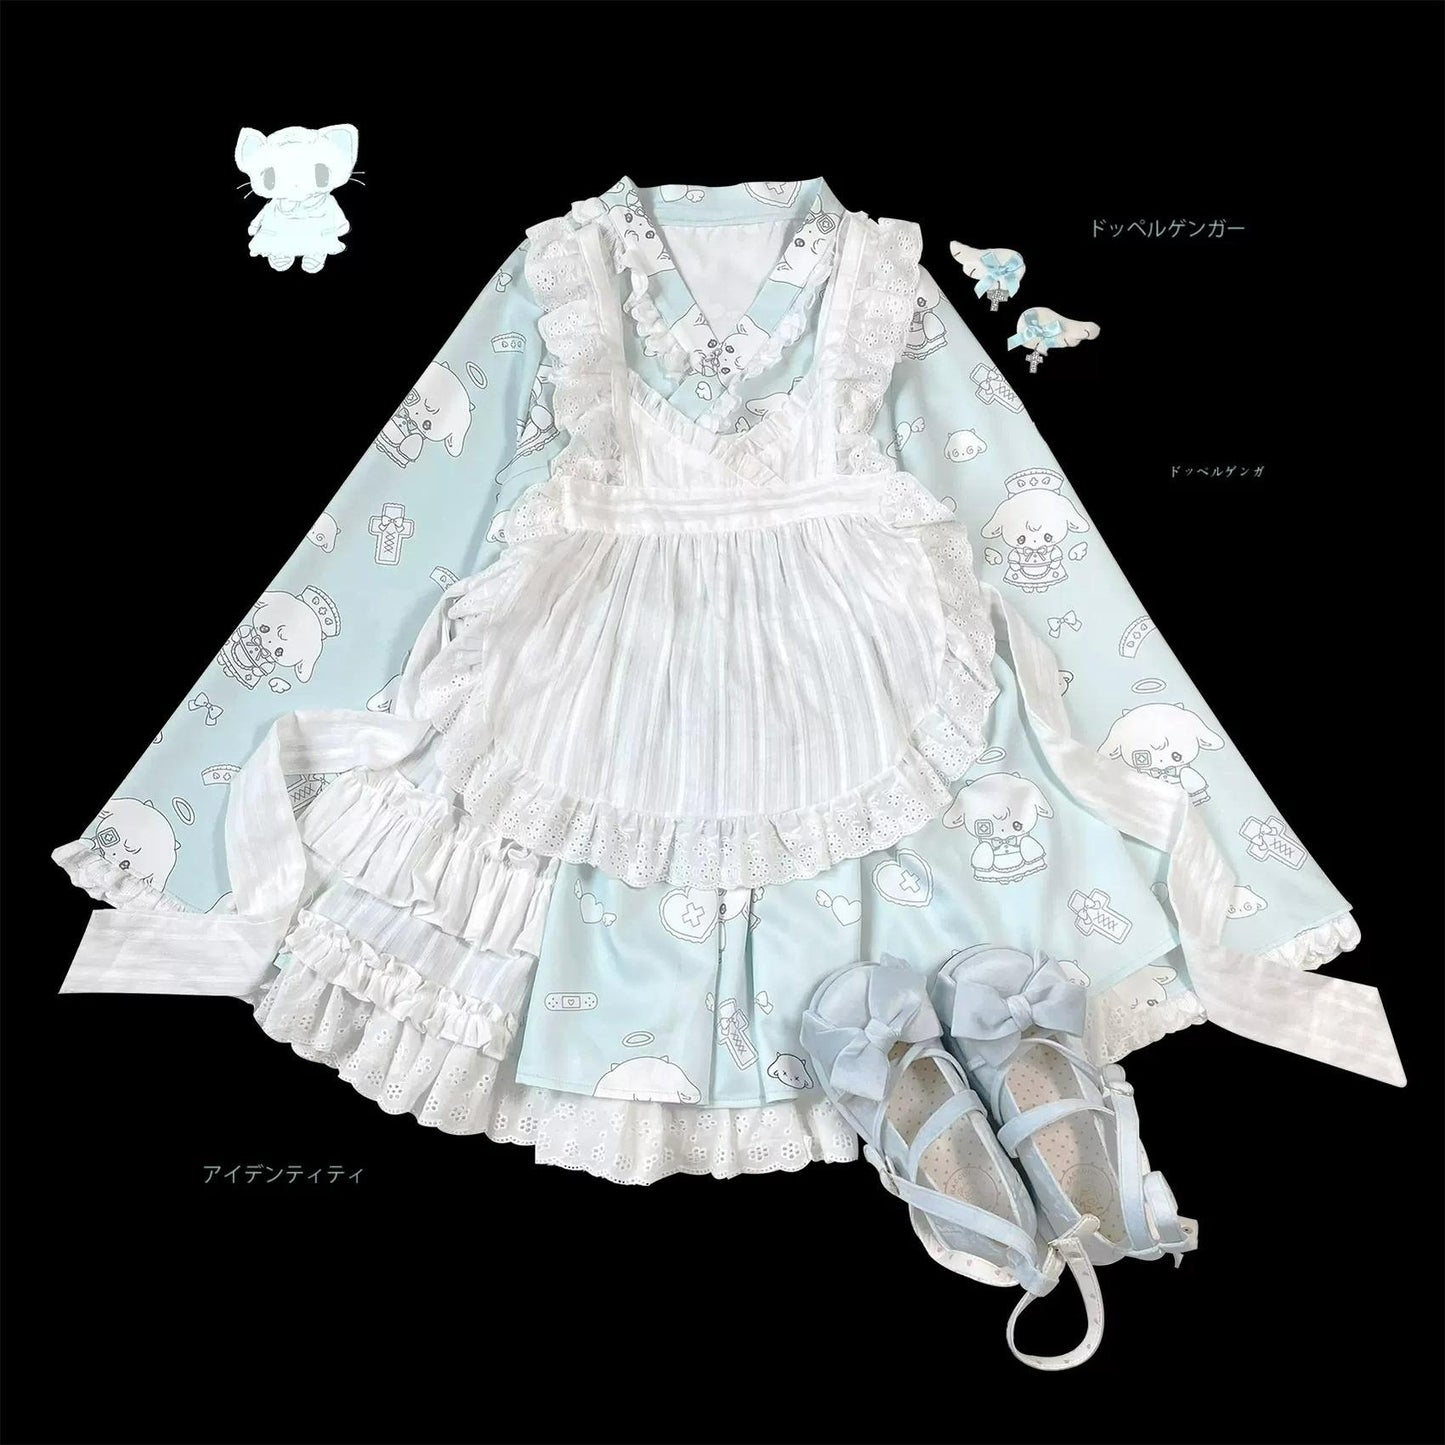 Tenshi Kaiwai Patchwork Skirt Kimono Top White Apron Three-Piece Set 36786:536950